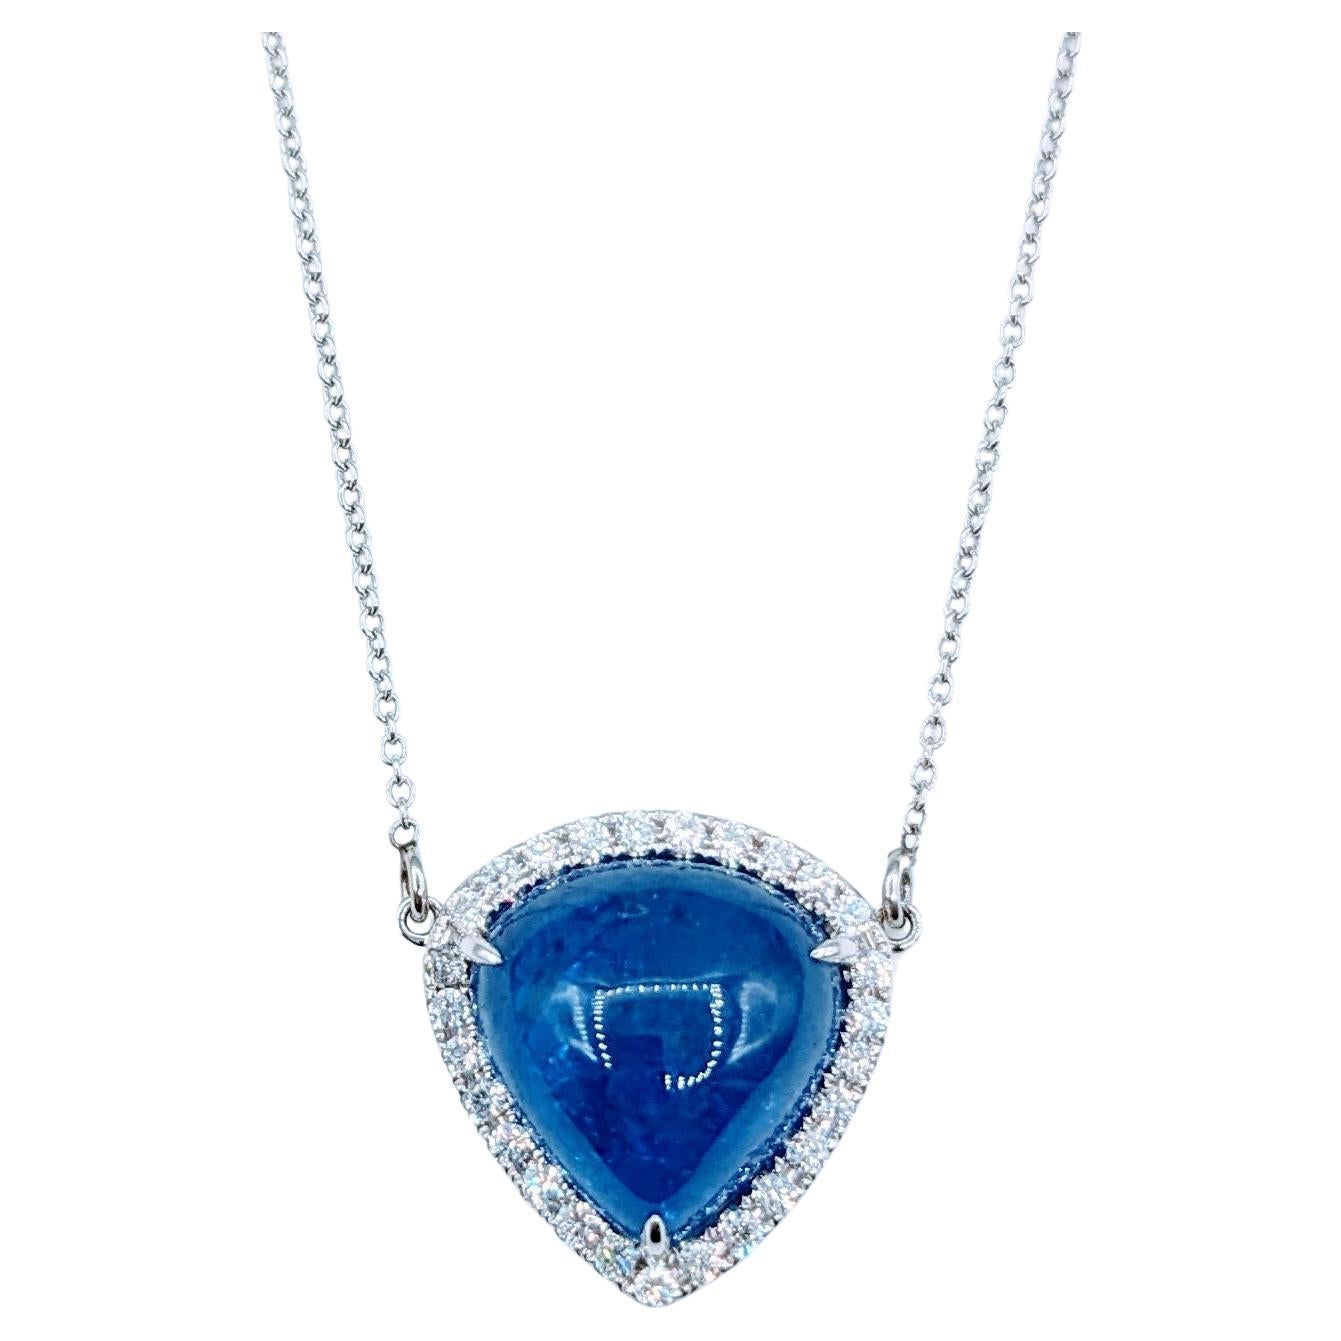 Vivid 7.27ct Cabochon Tanzanite & Diamond Pendant Necklace For Sale